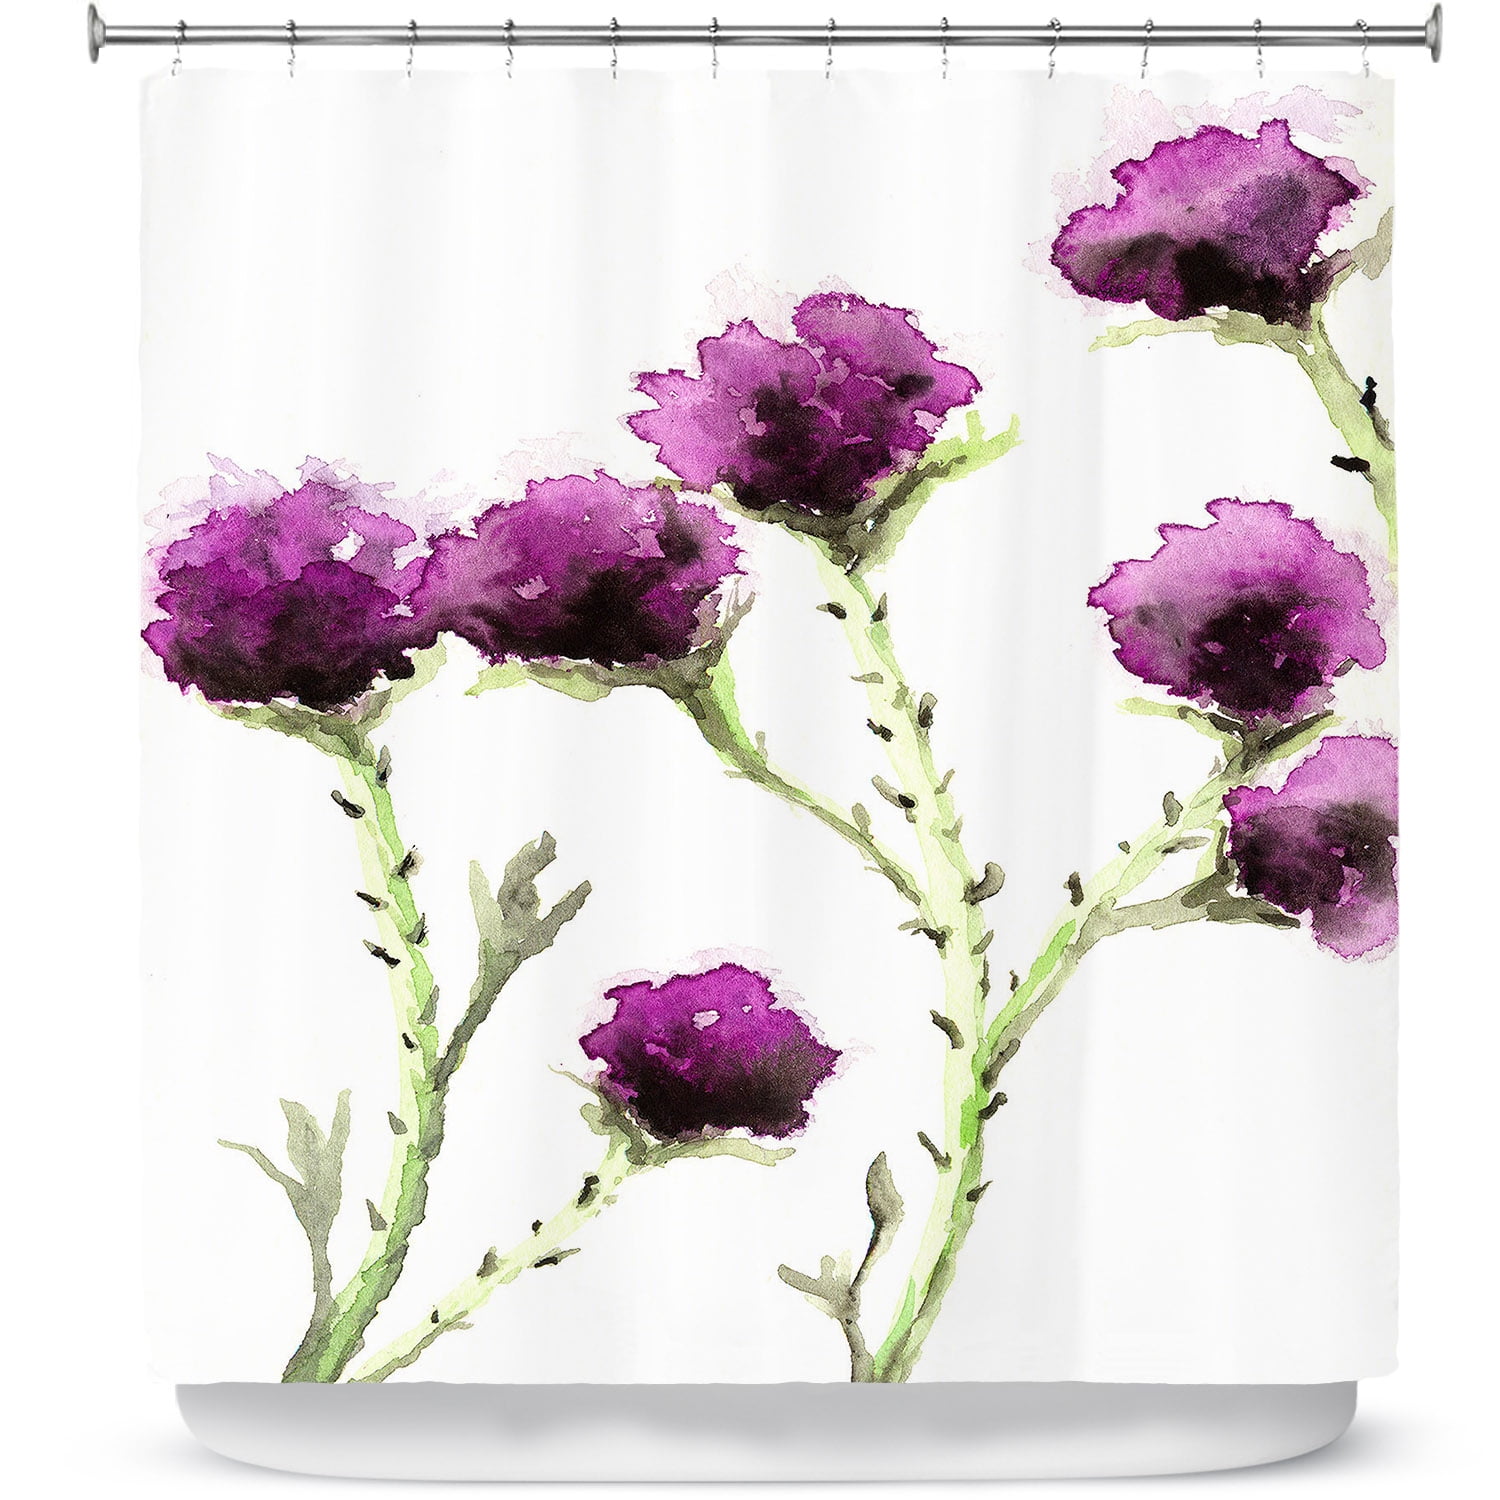 Shower Curtains 70 x 73 from DiaNoche Designs by Brazen Design Studio -  Milk Thistle 